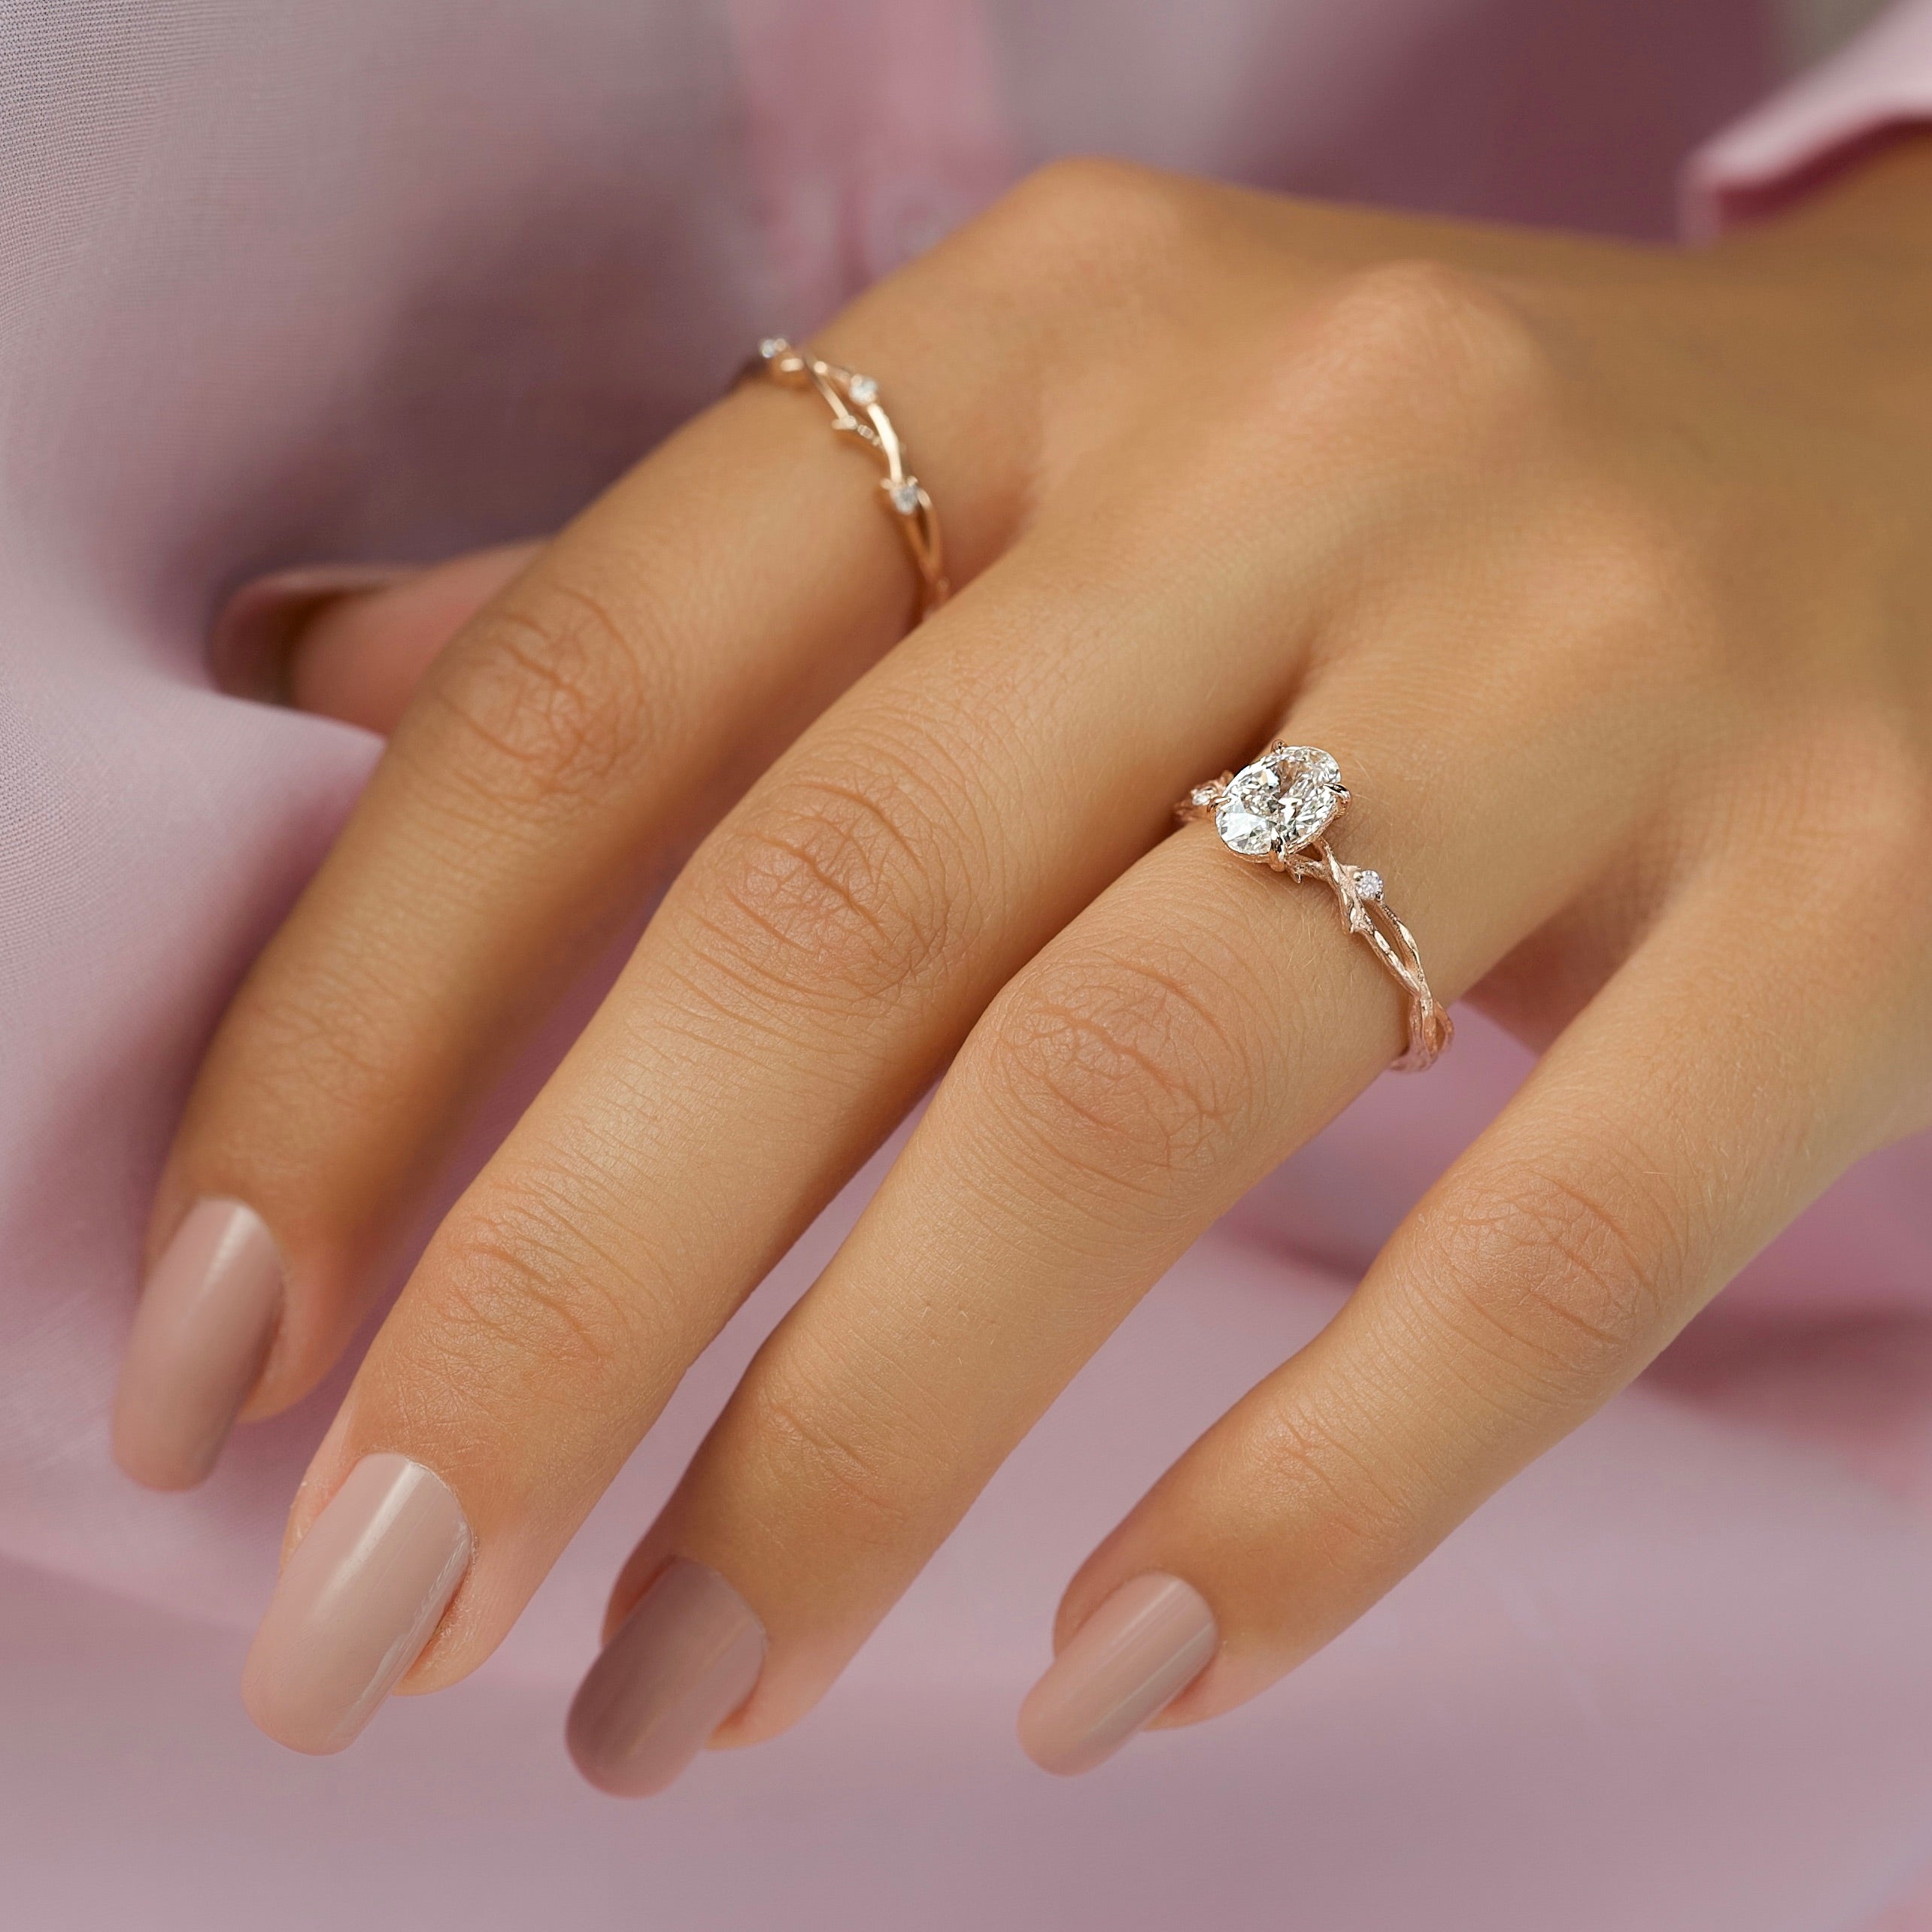 Buy Designer Diamond Ring For Men Online